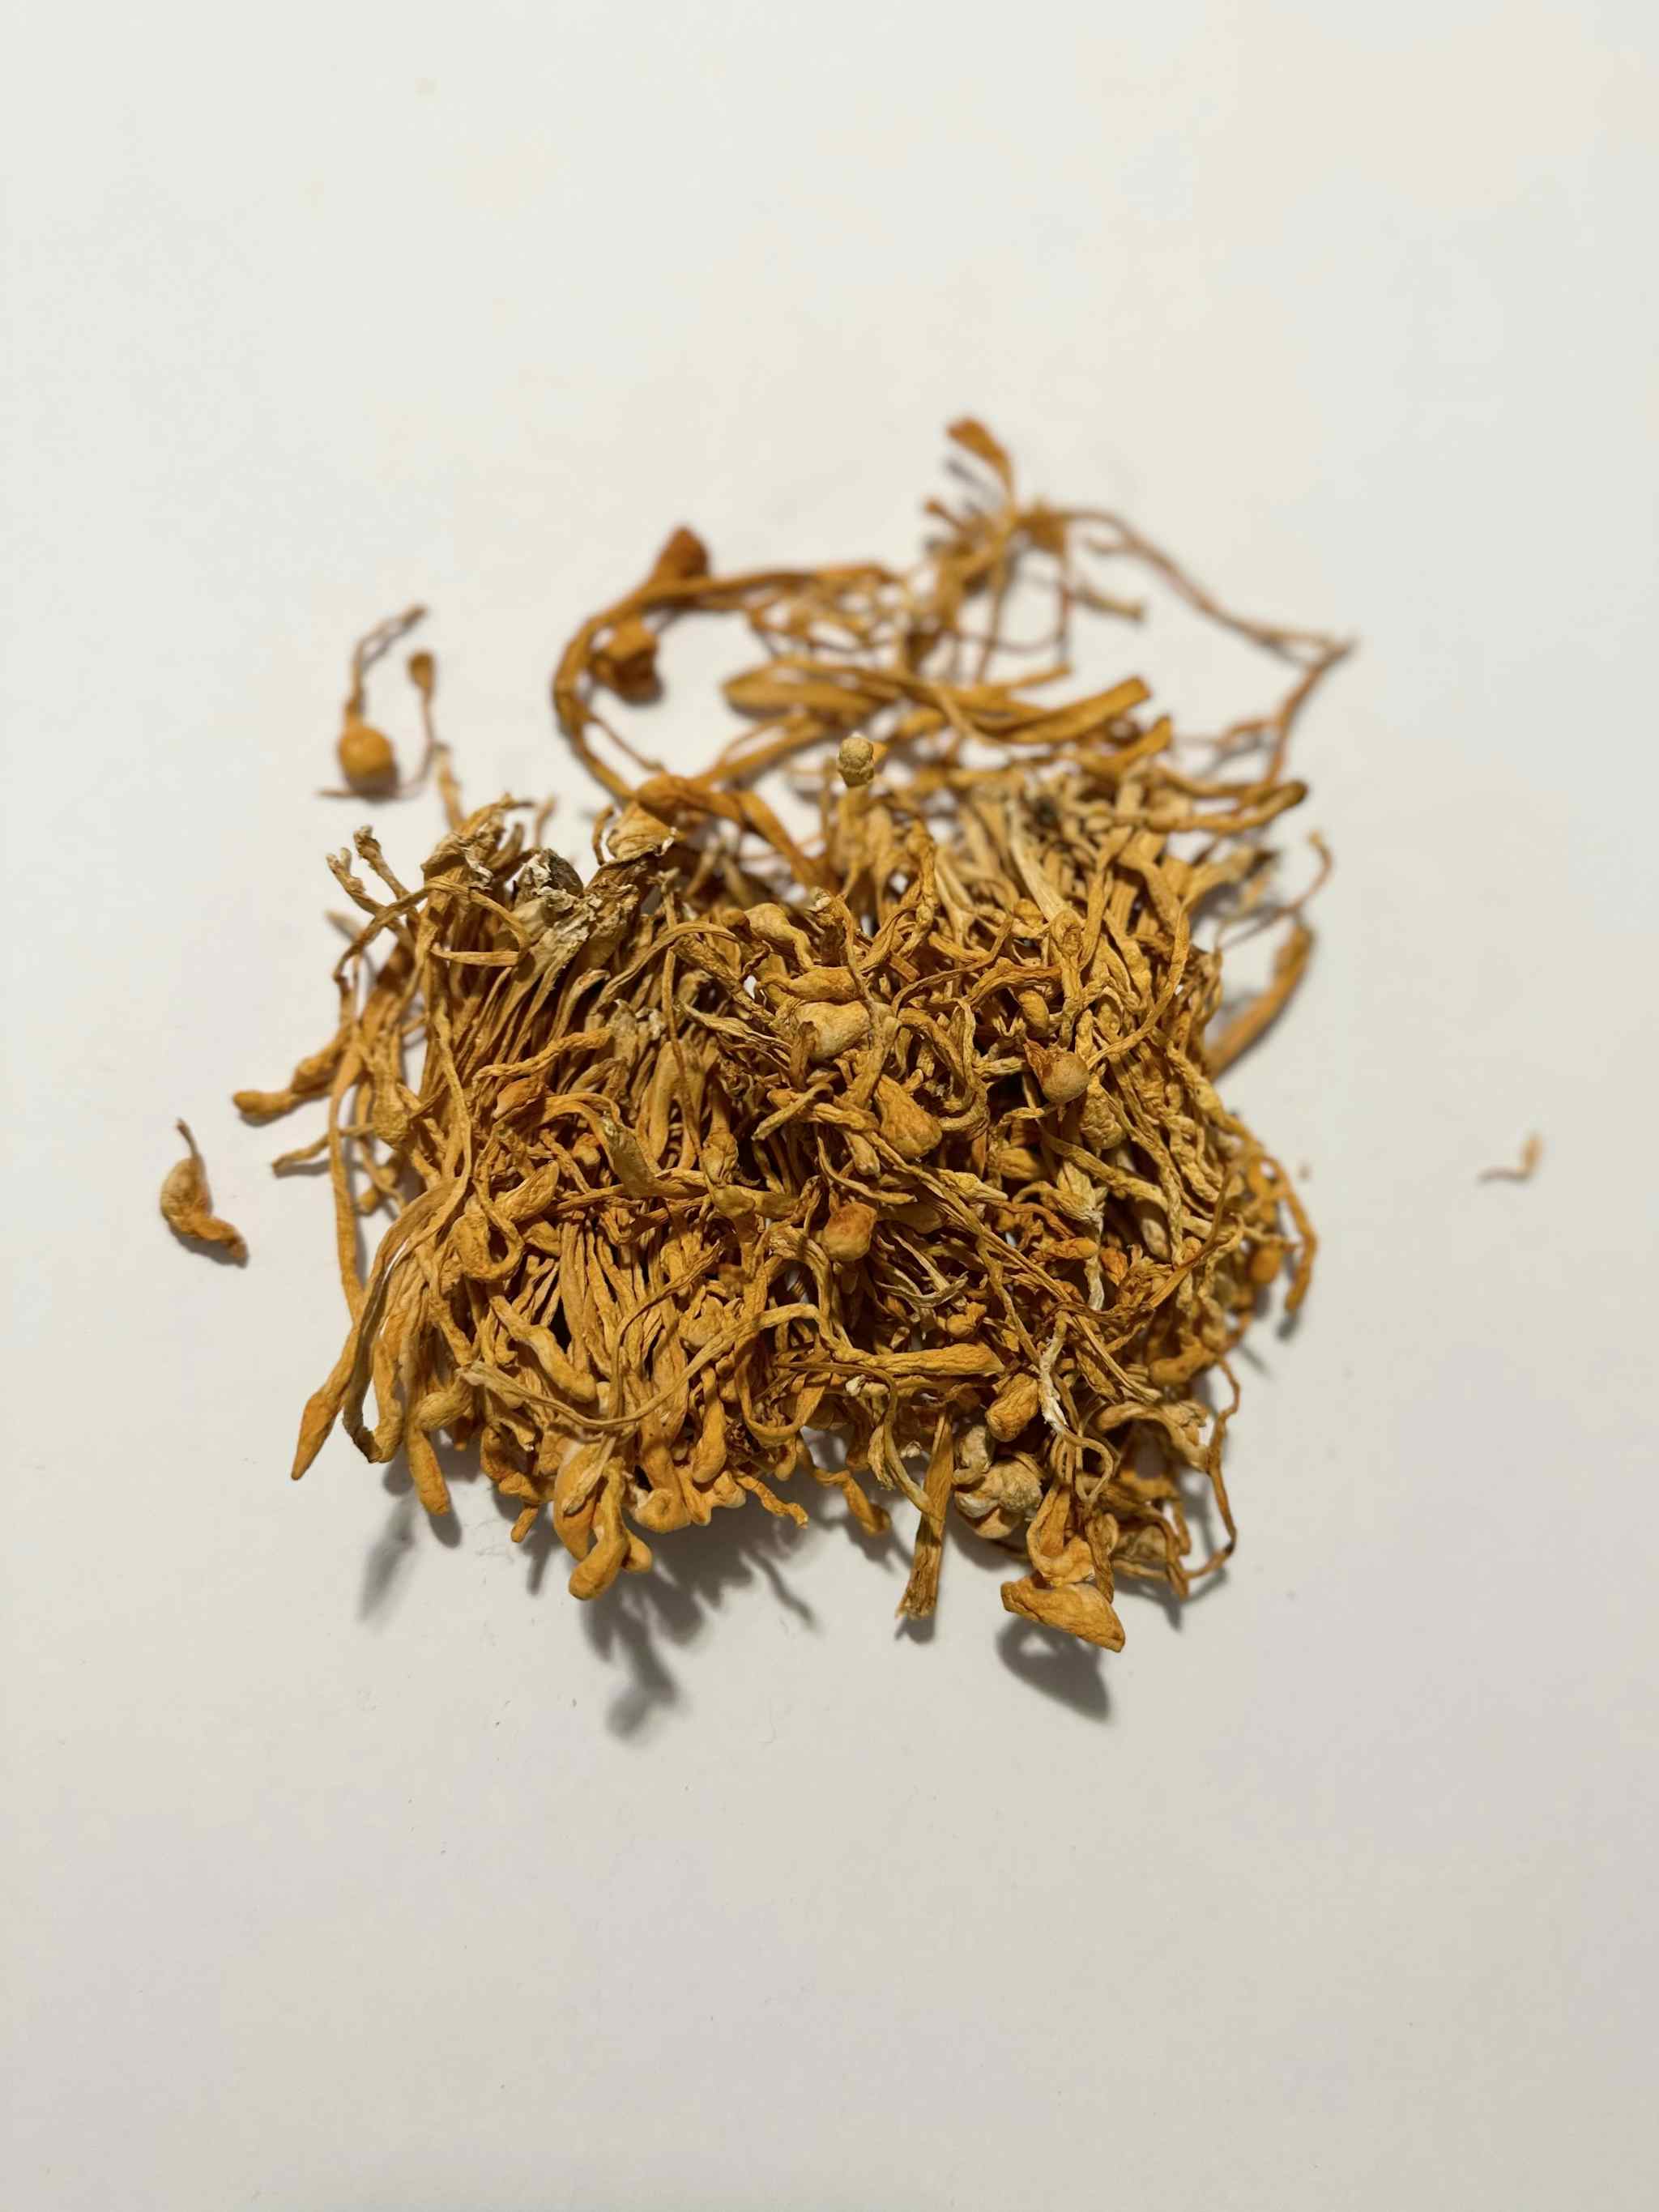 Dried Cordyceps